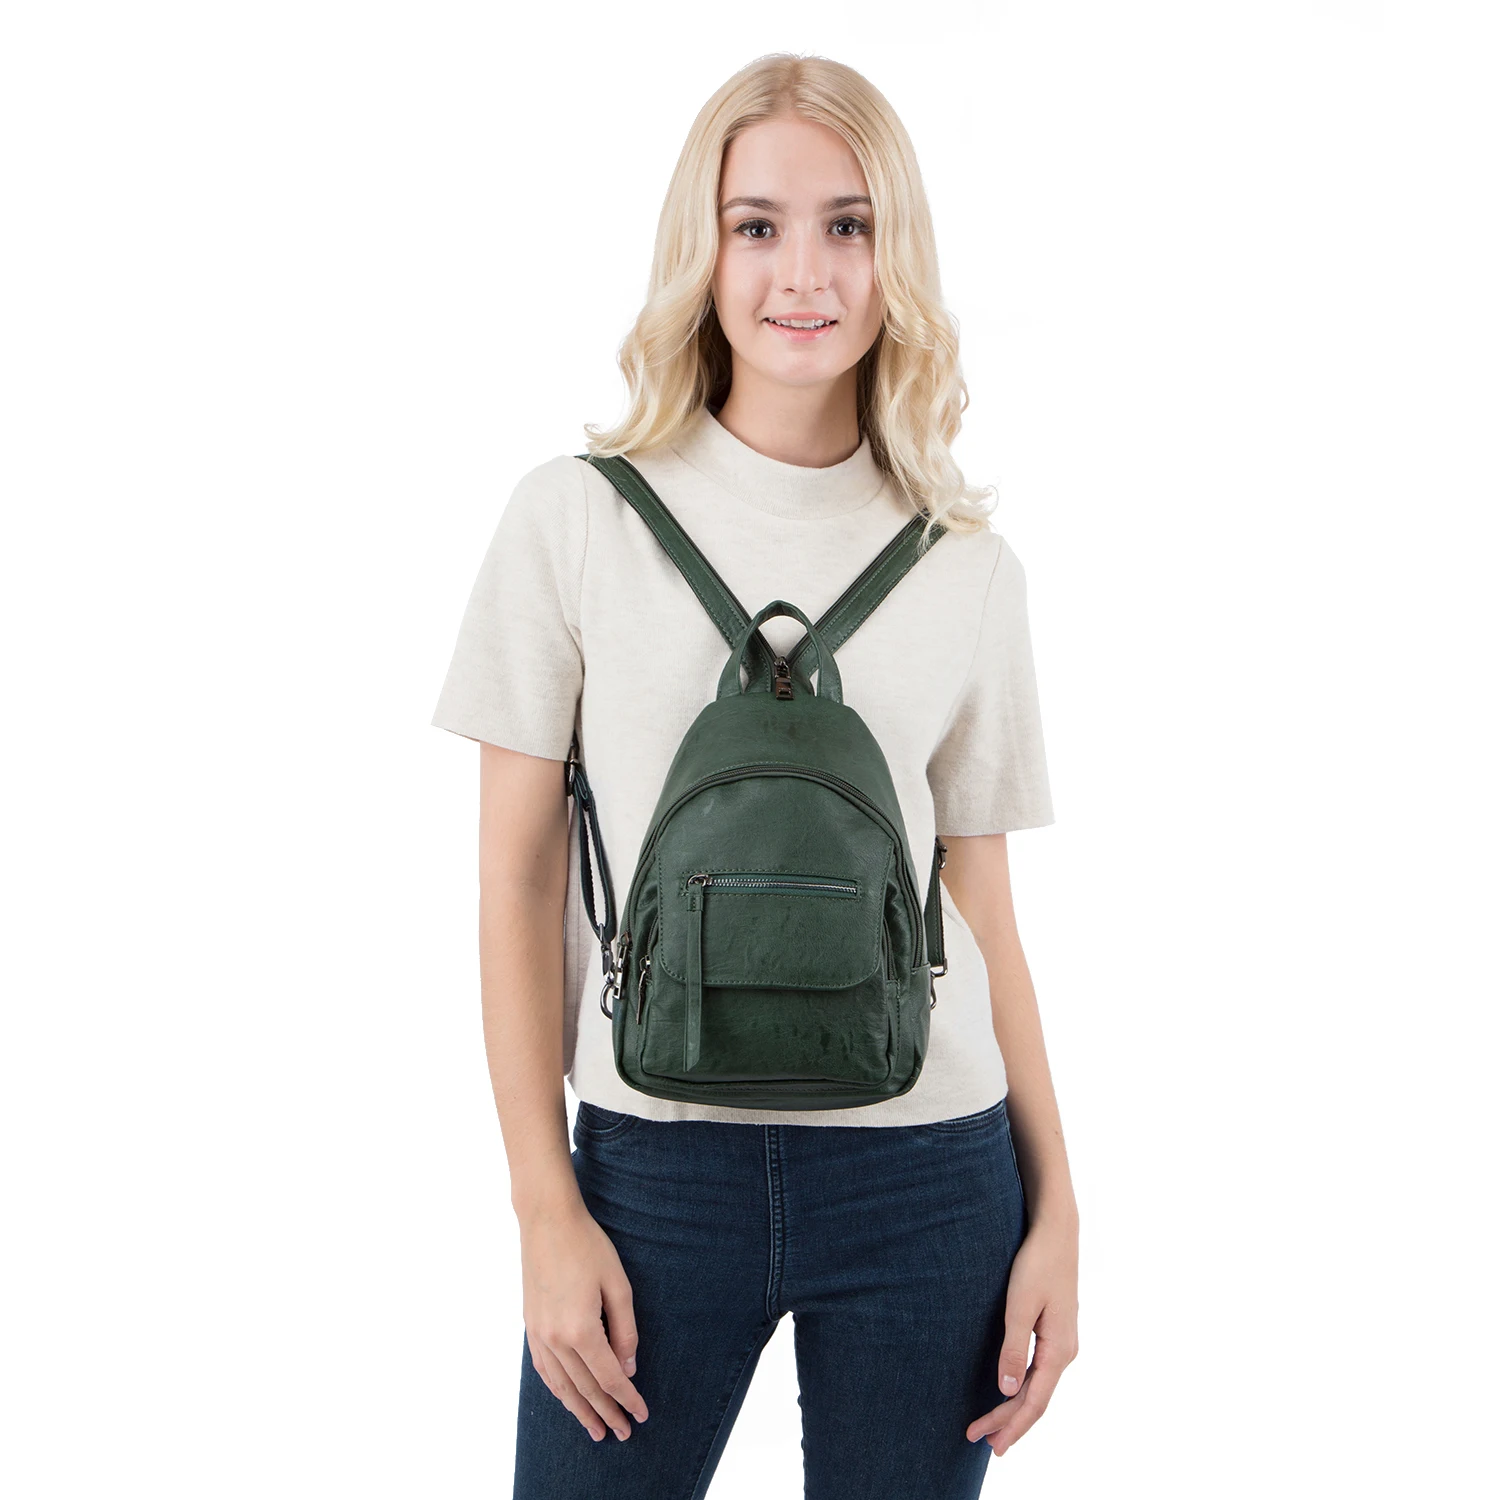 Amelie galanti роскошный кожаный рюкзак женский дорожный мини рюкзак Mochilas Школьные сумки женская сумка на плечо модный